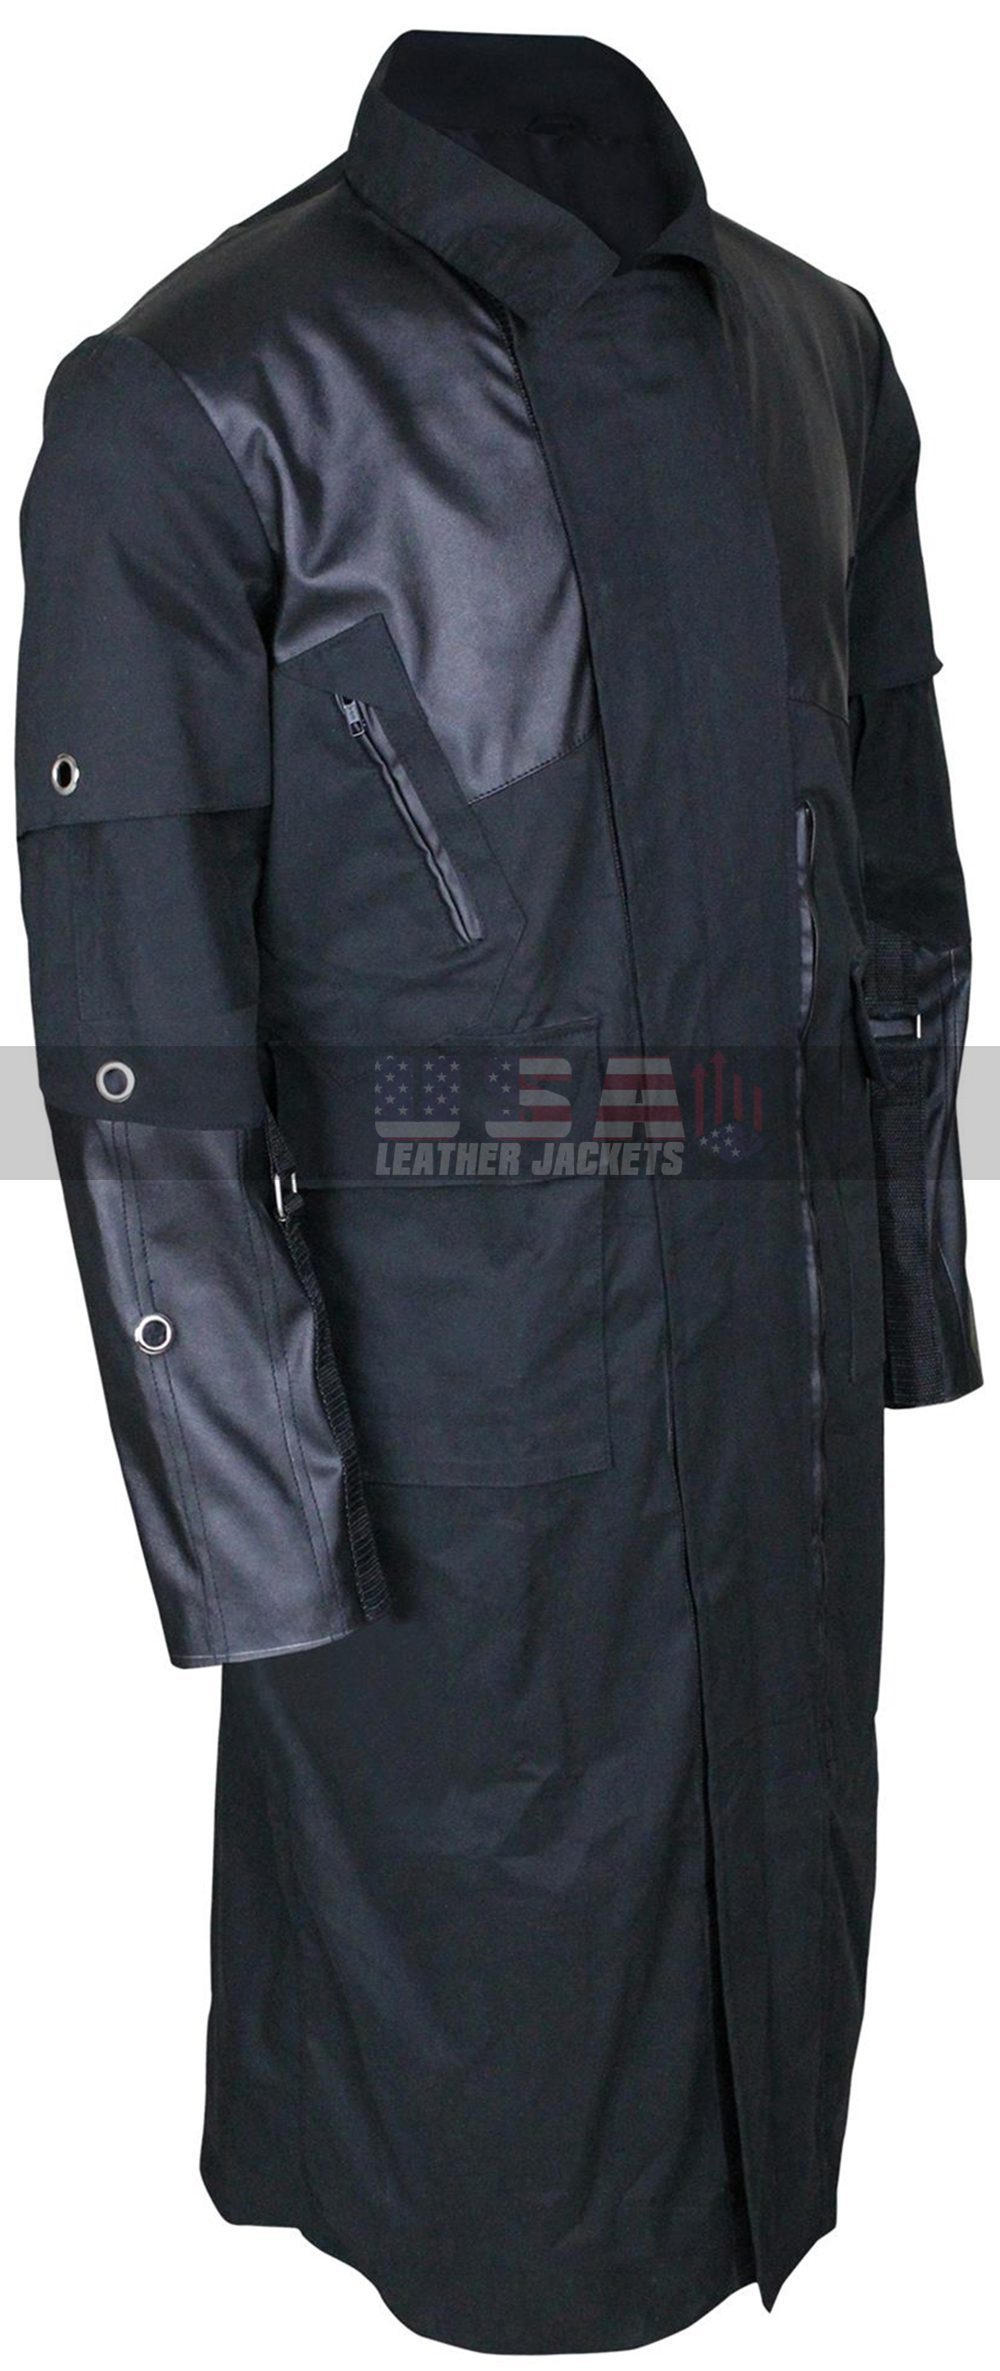 Adam Jensen Deus Ex Mankind Divided Costume Leather Coat